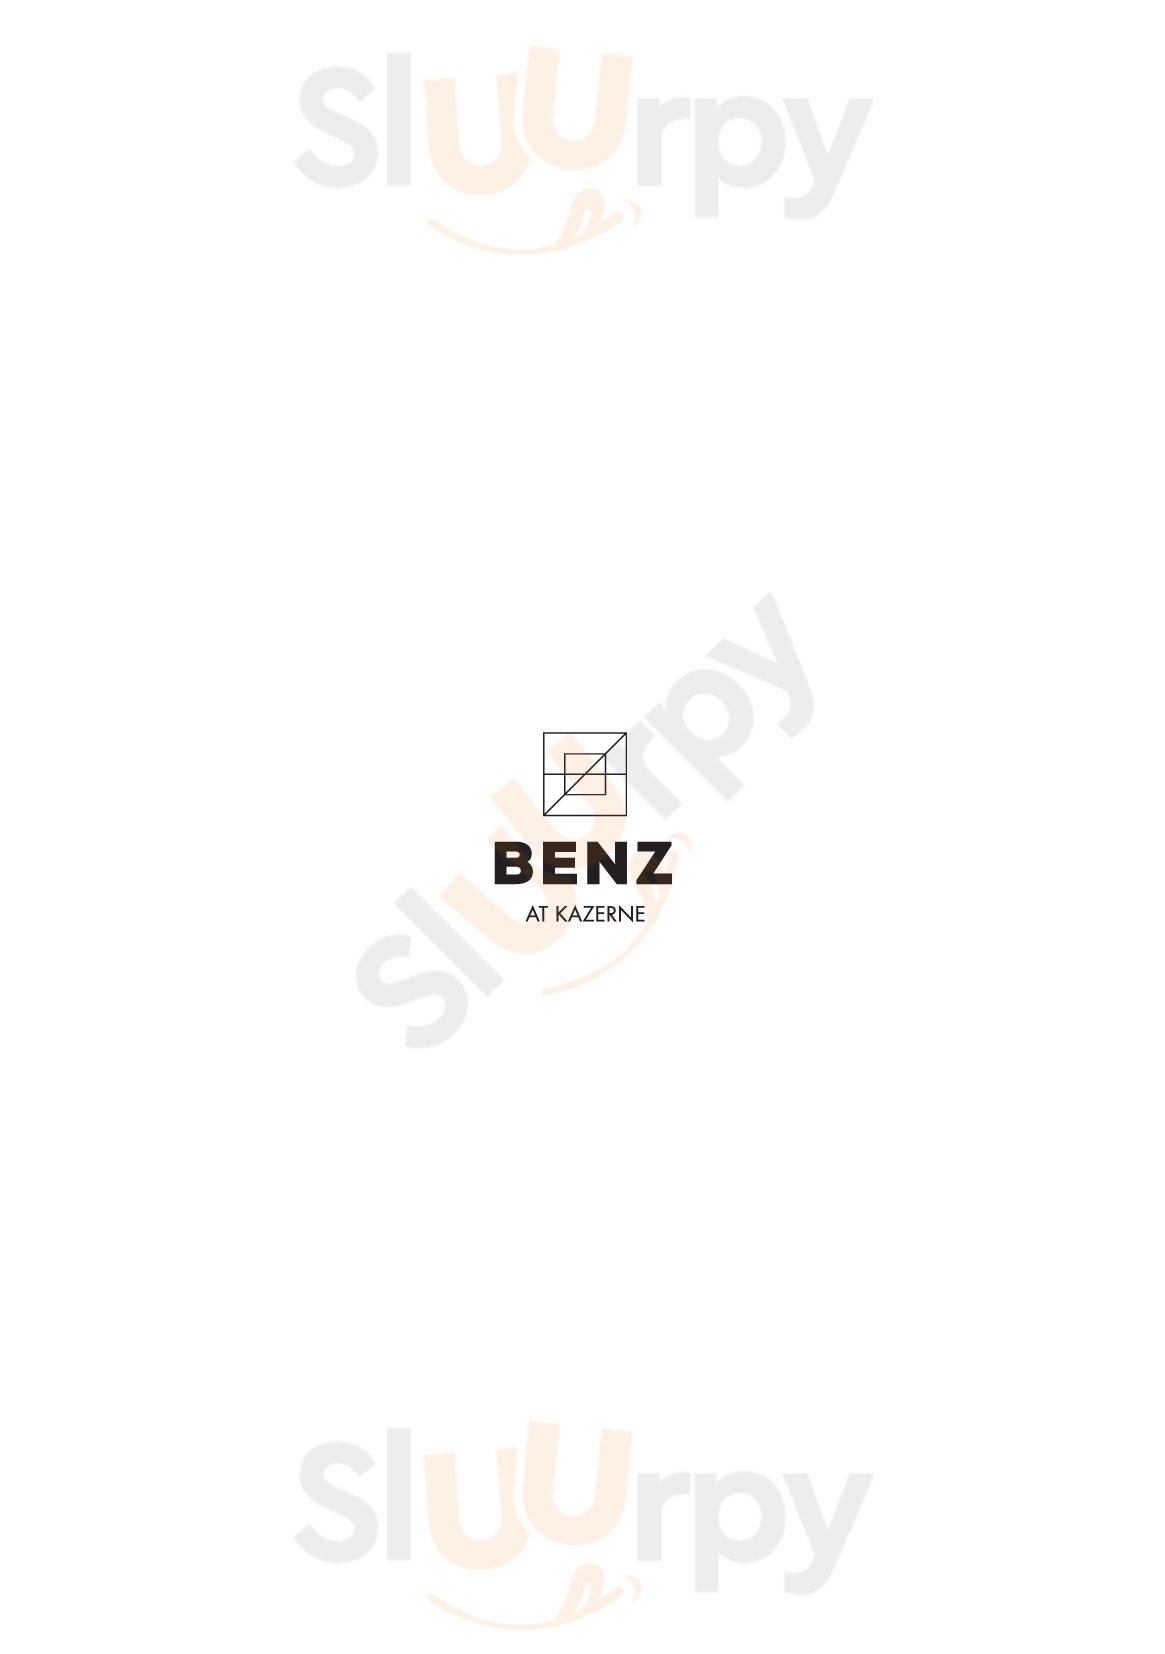 Benz At Kazerne Eindhoven Menu - 1